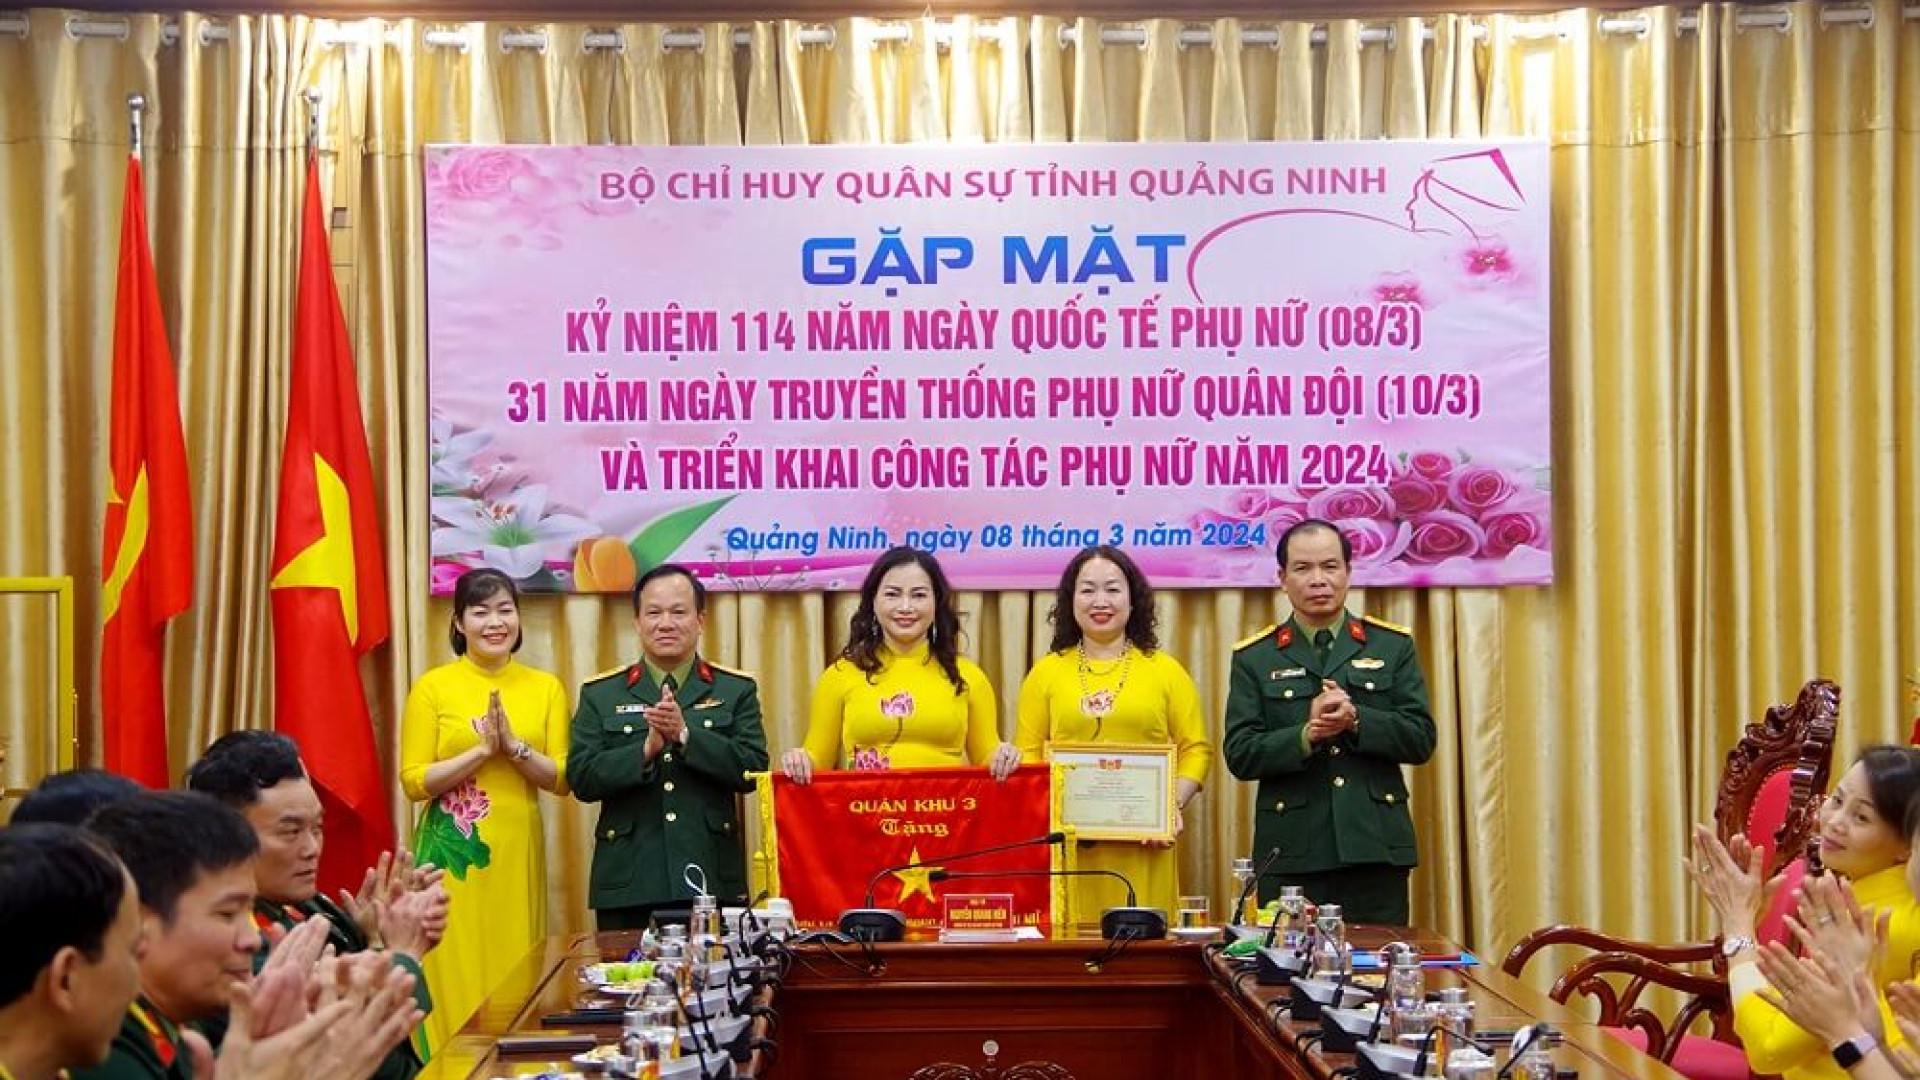 Bộ CHQS tỉnh Quảng Ninh gặp mặt kỷ niệm Ngày Quốc tế Phụ nữ 8-3